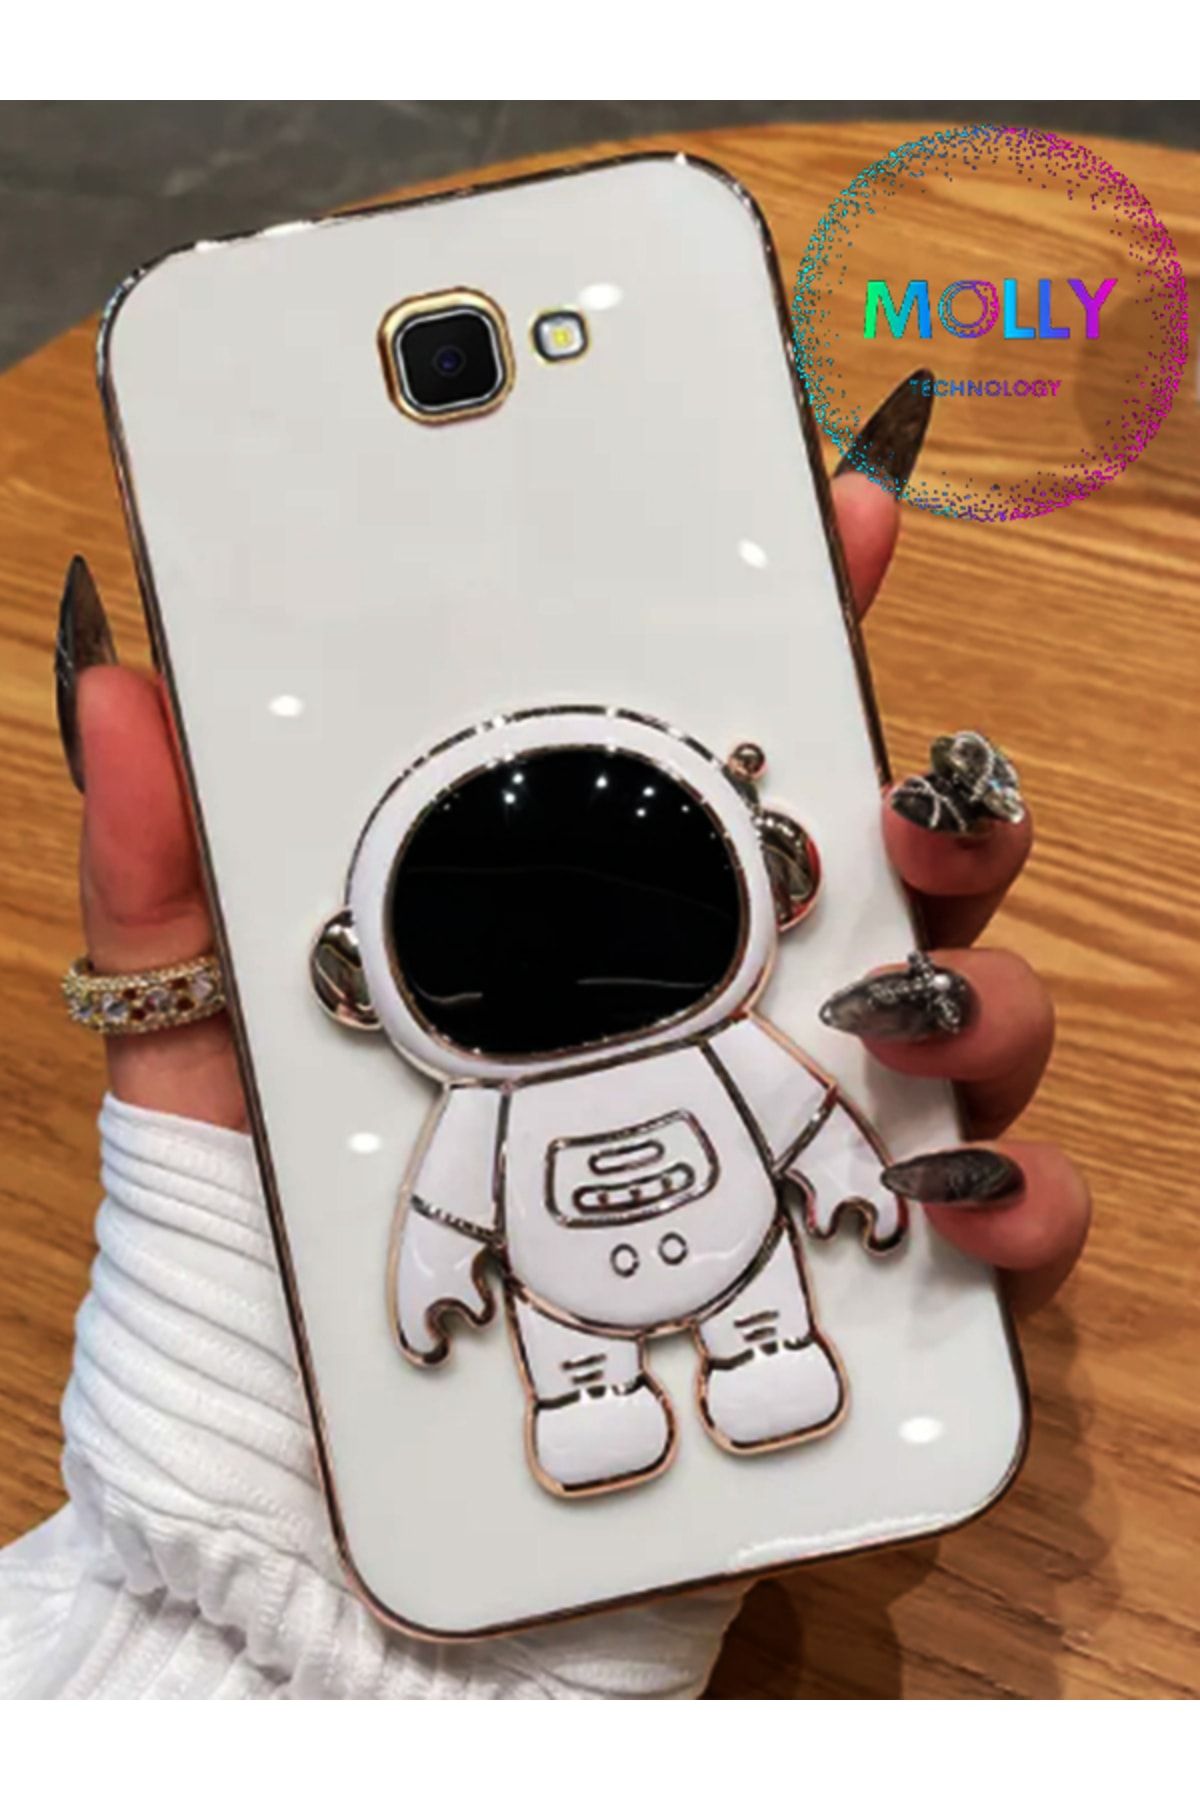 Molly Technology Galaxy J7 Prime 2 Için Inci Beyazı Astronot Standlı Kenarları Gold Detaylı Lüks Silikon Kılıf